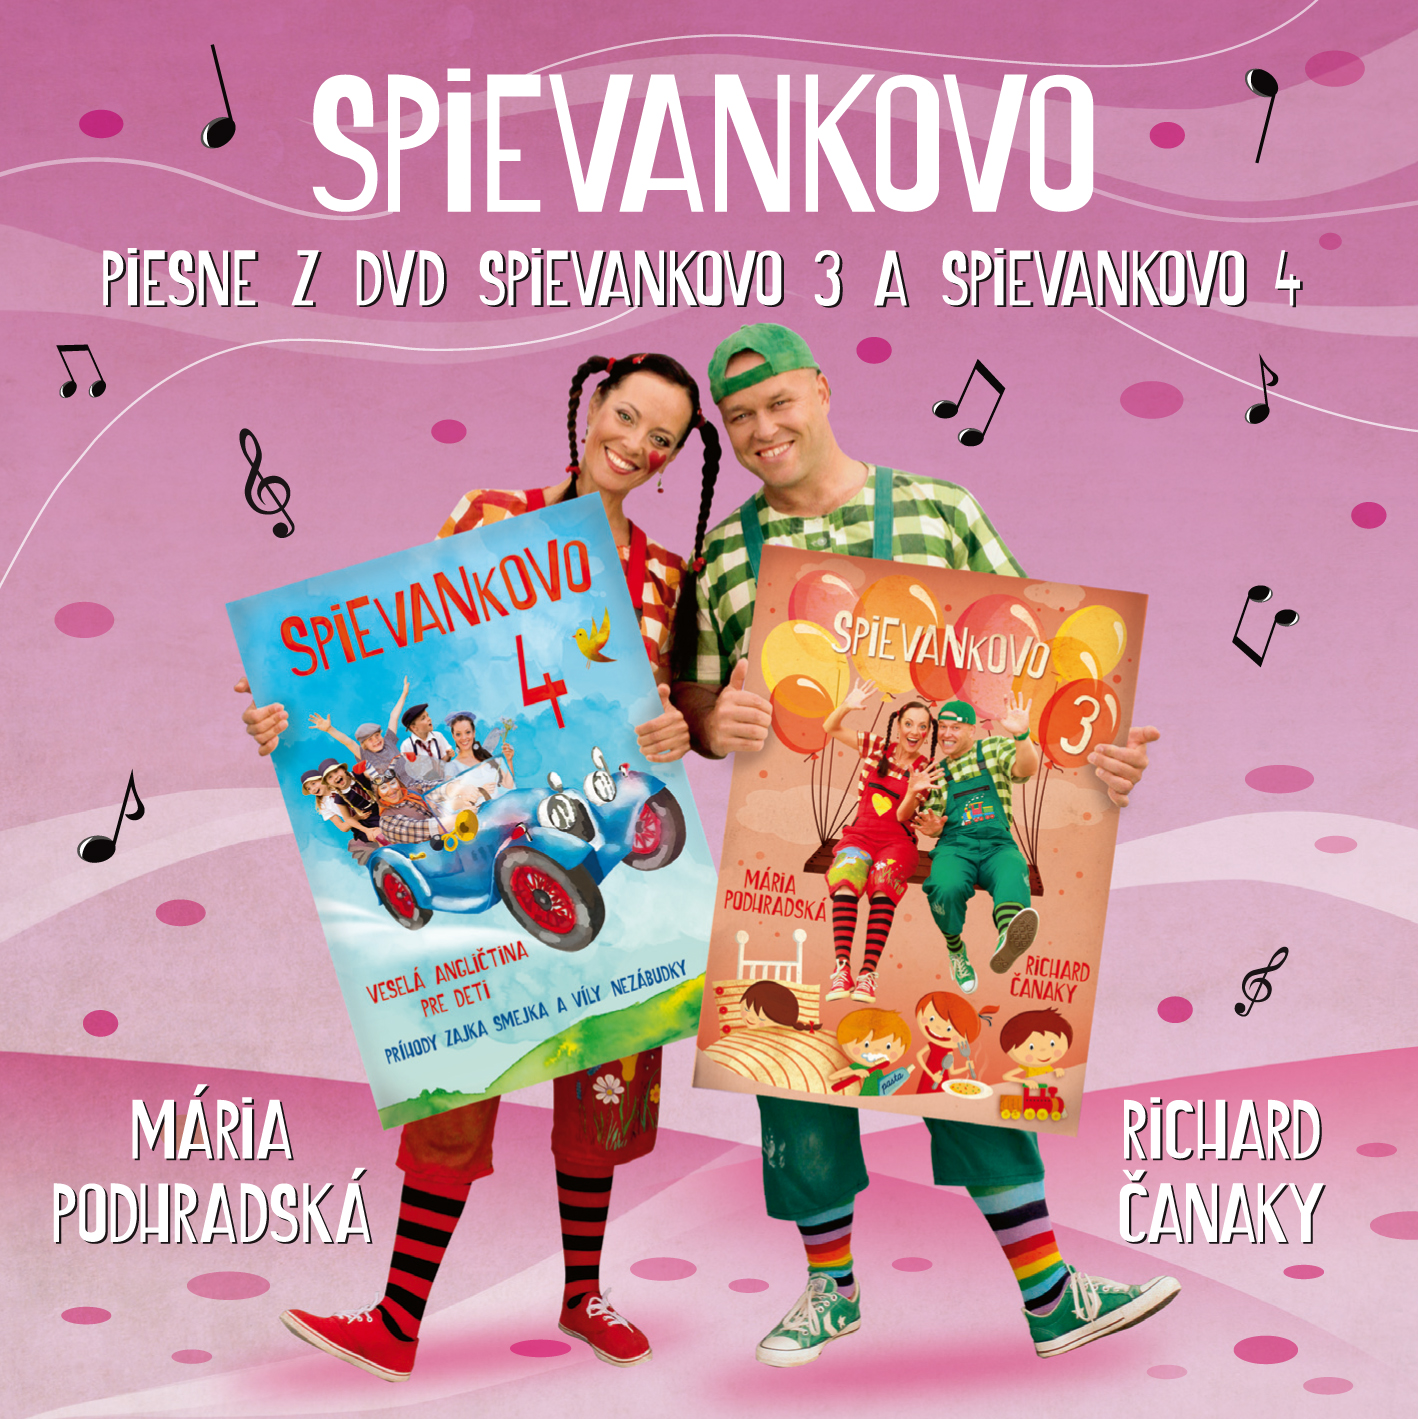 Piesne z DVD Spievankovo 3 a Spievankovo 4